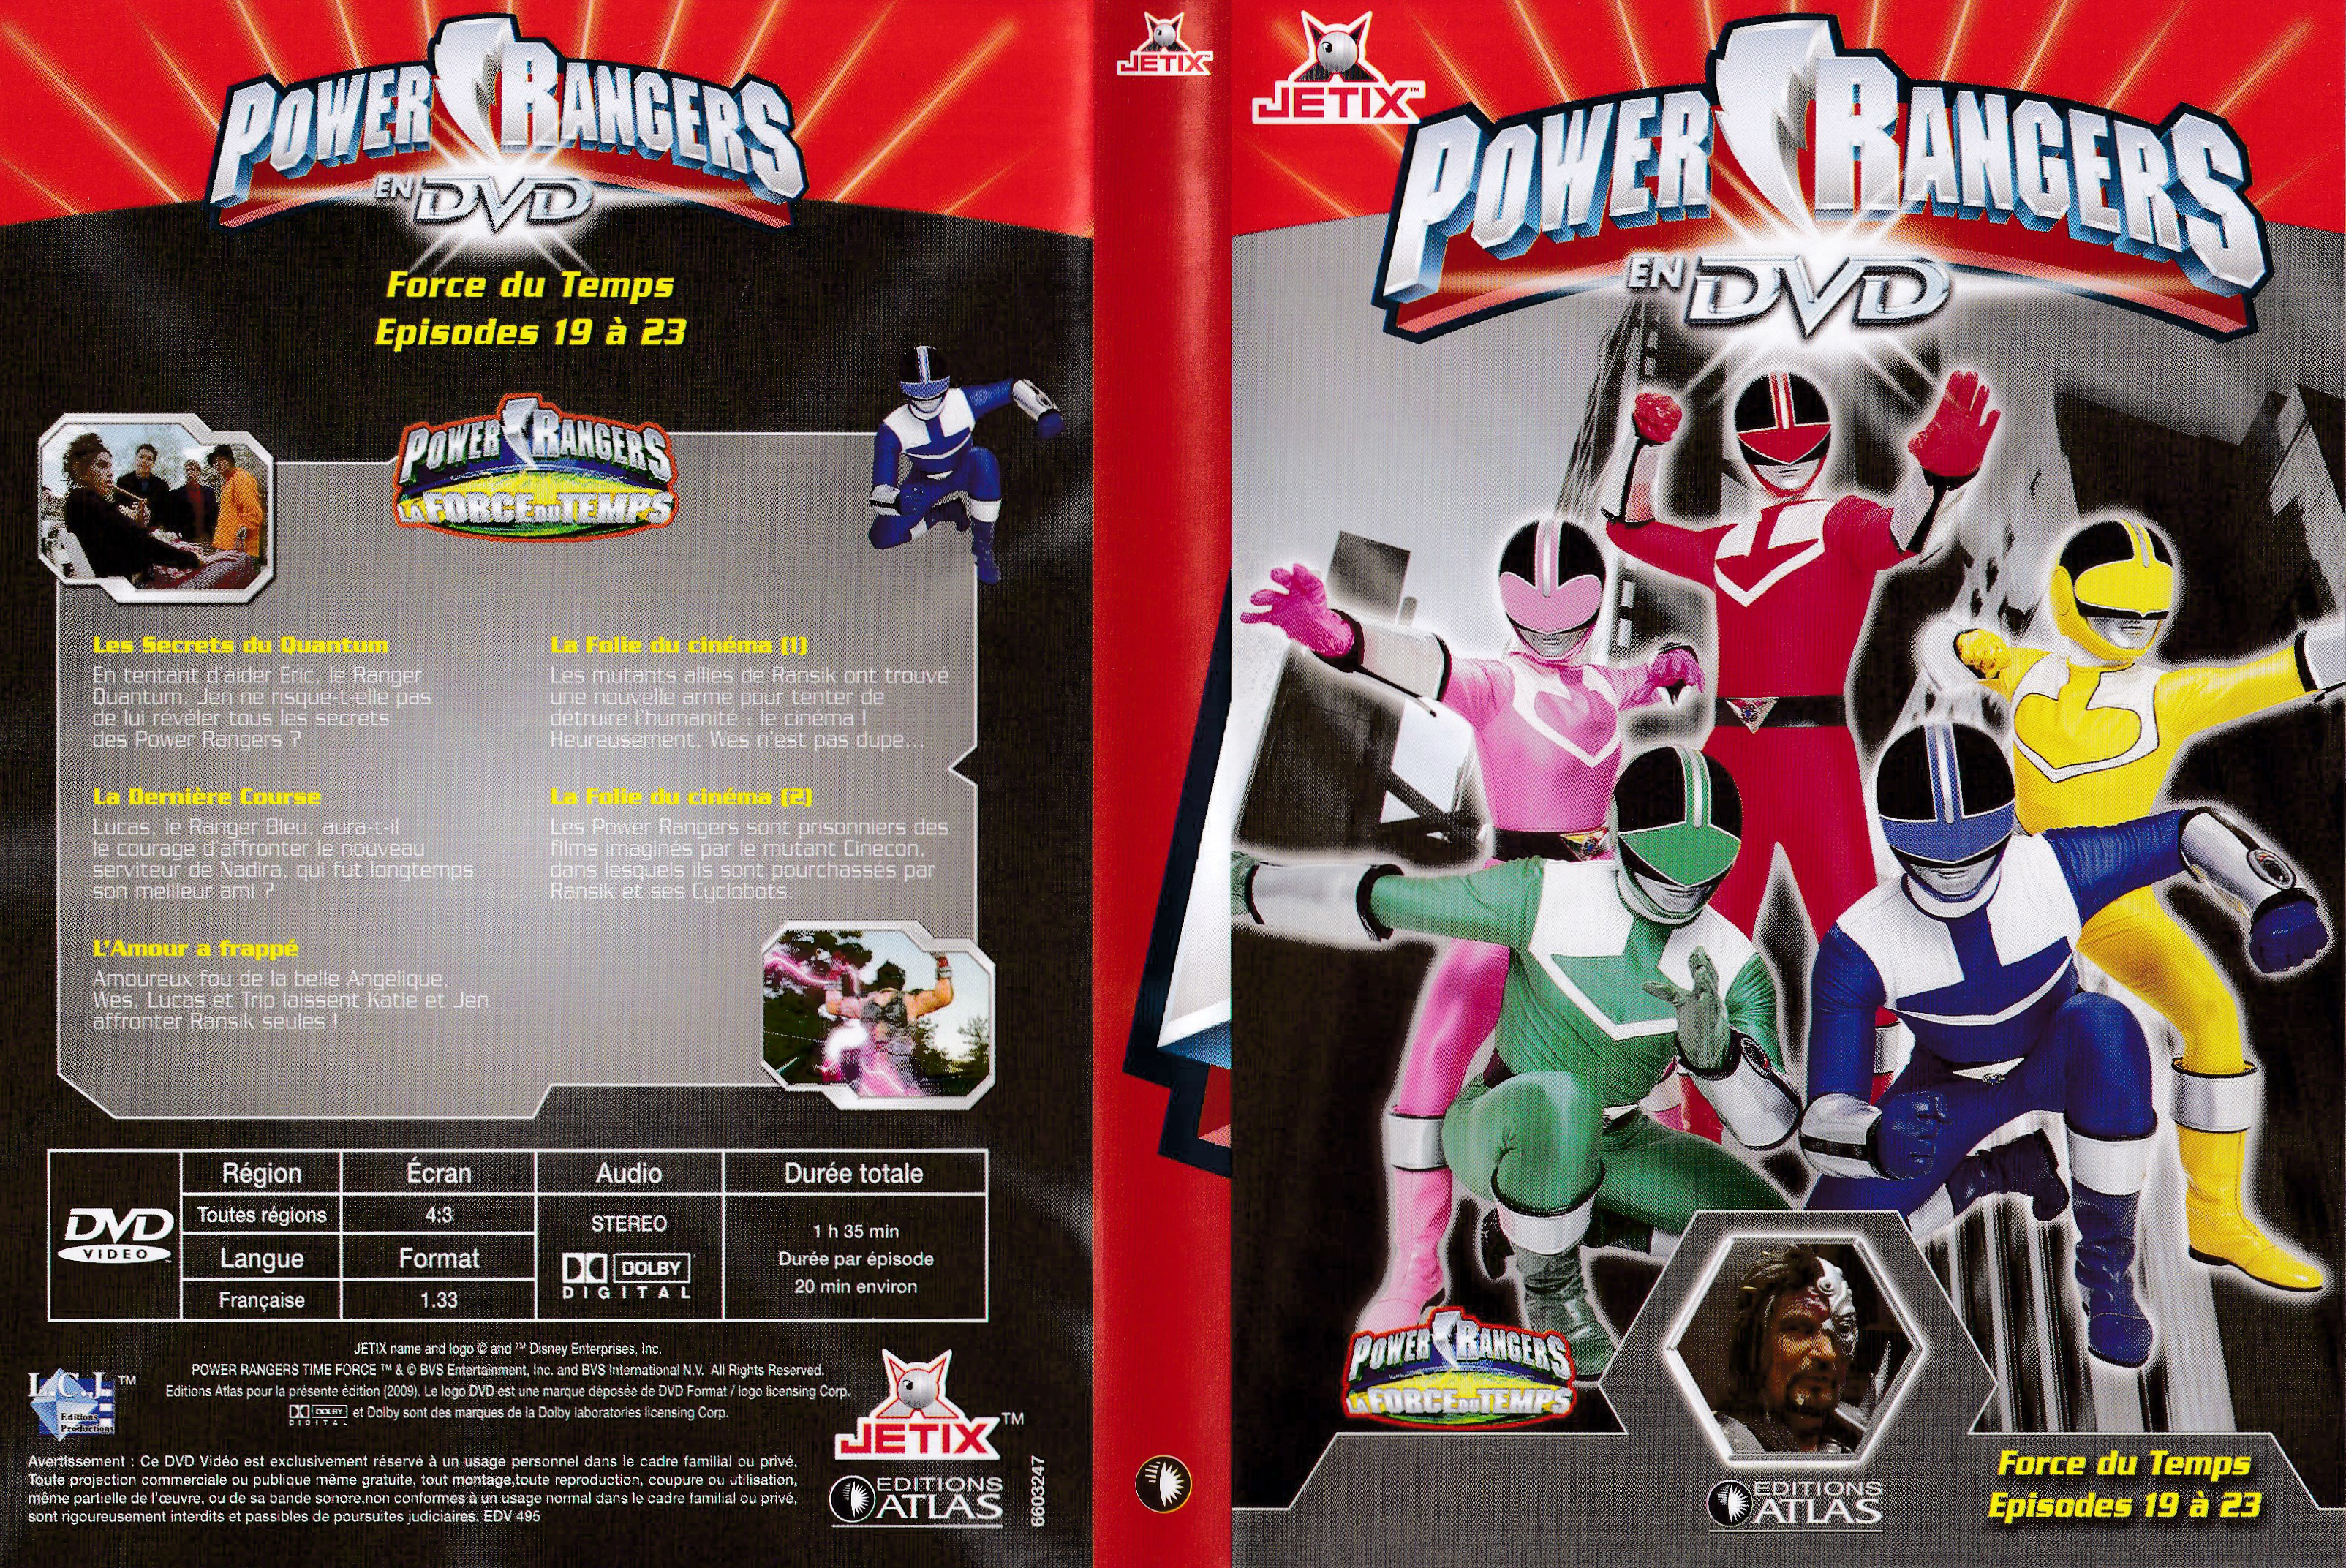 Power Rangers en DVD n°47